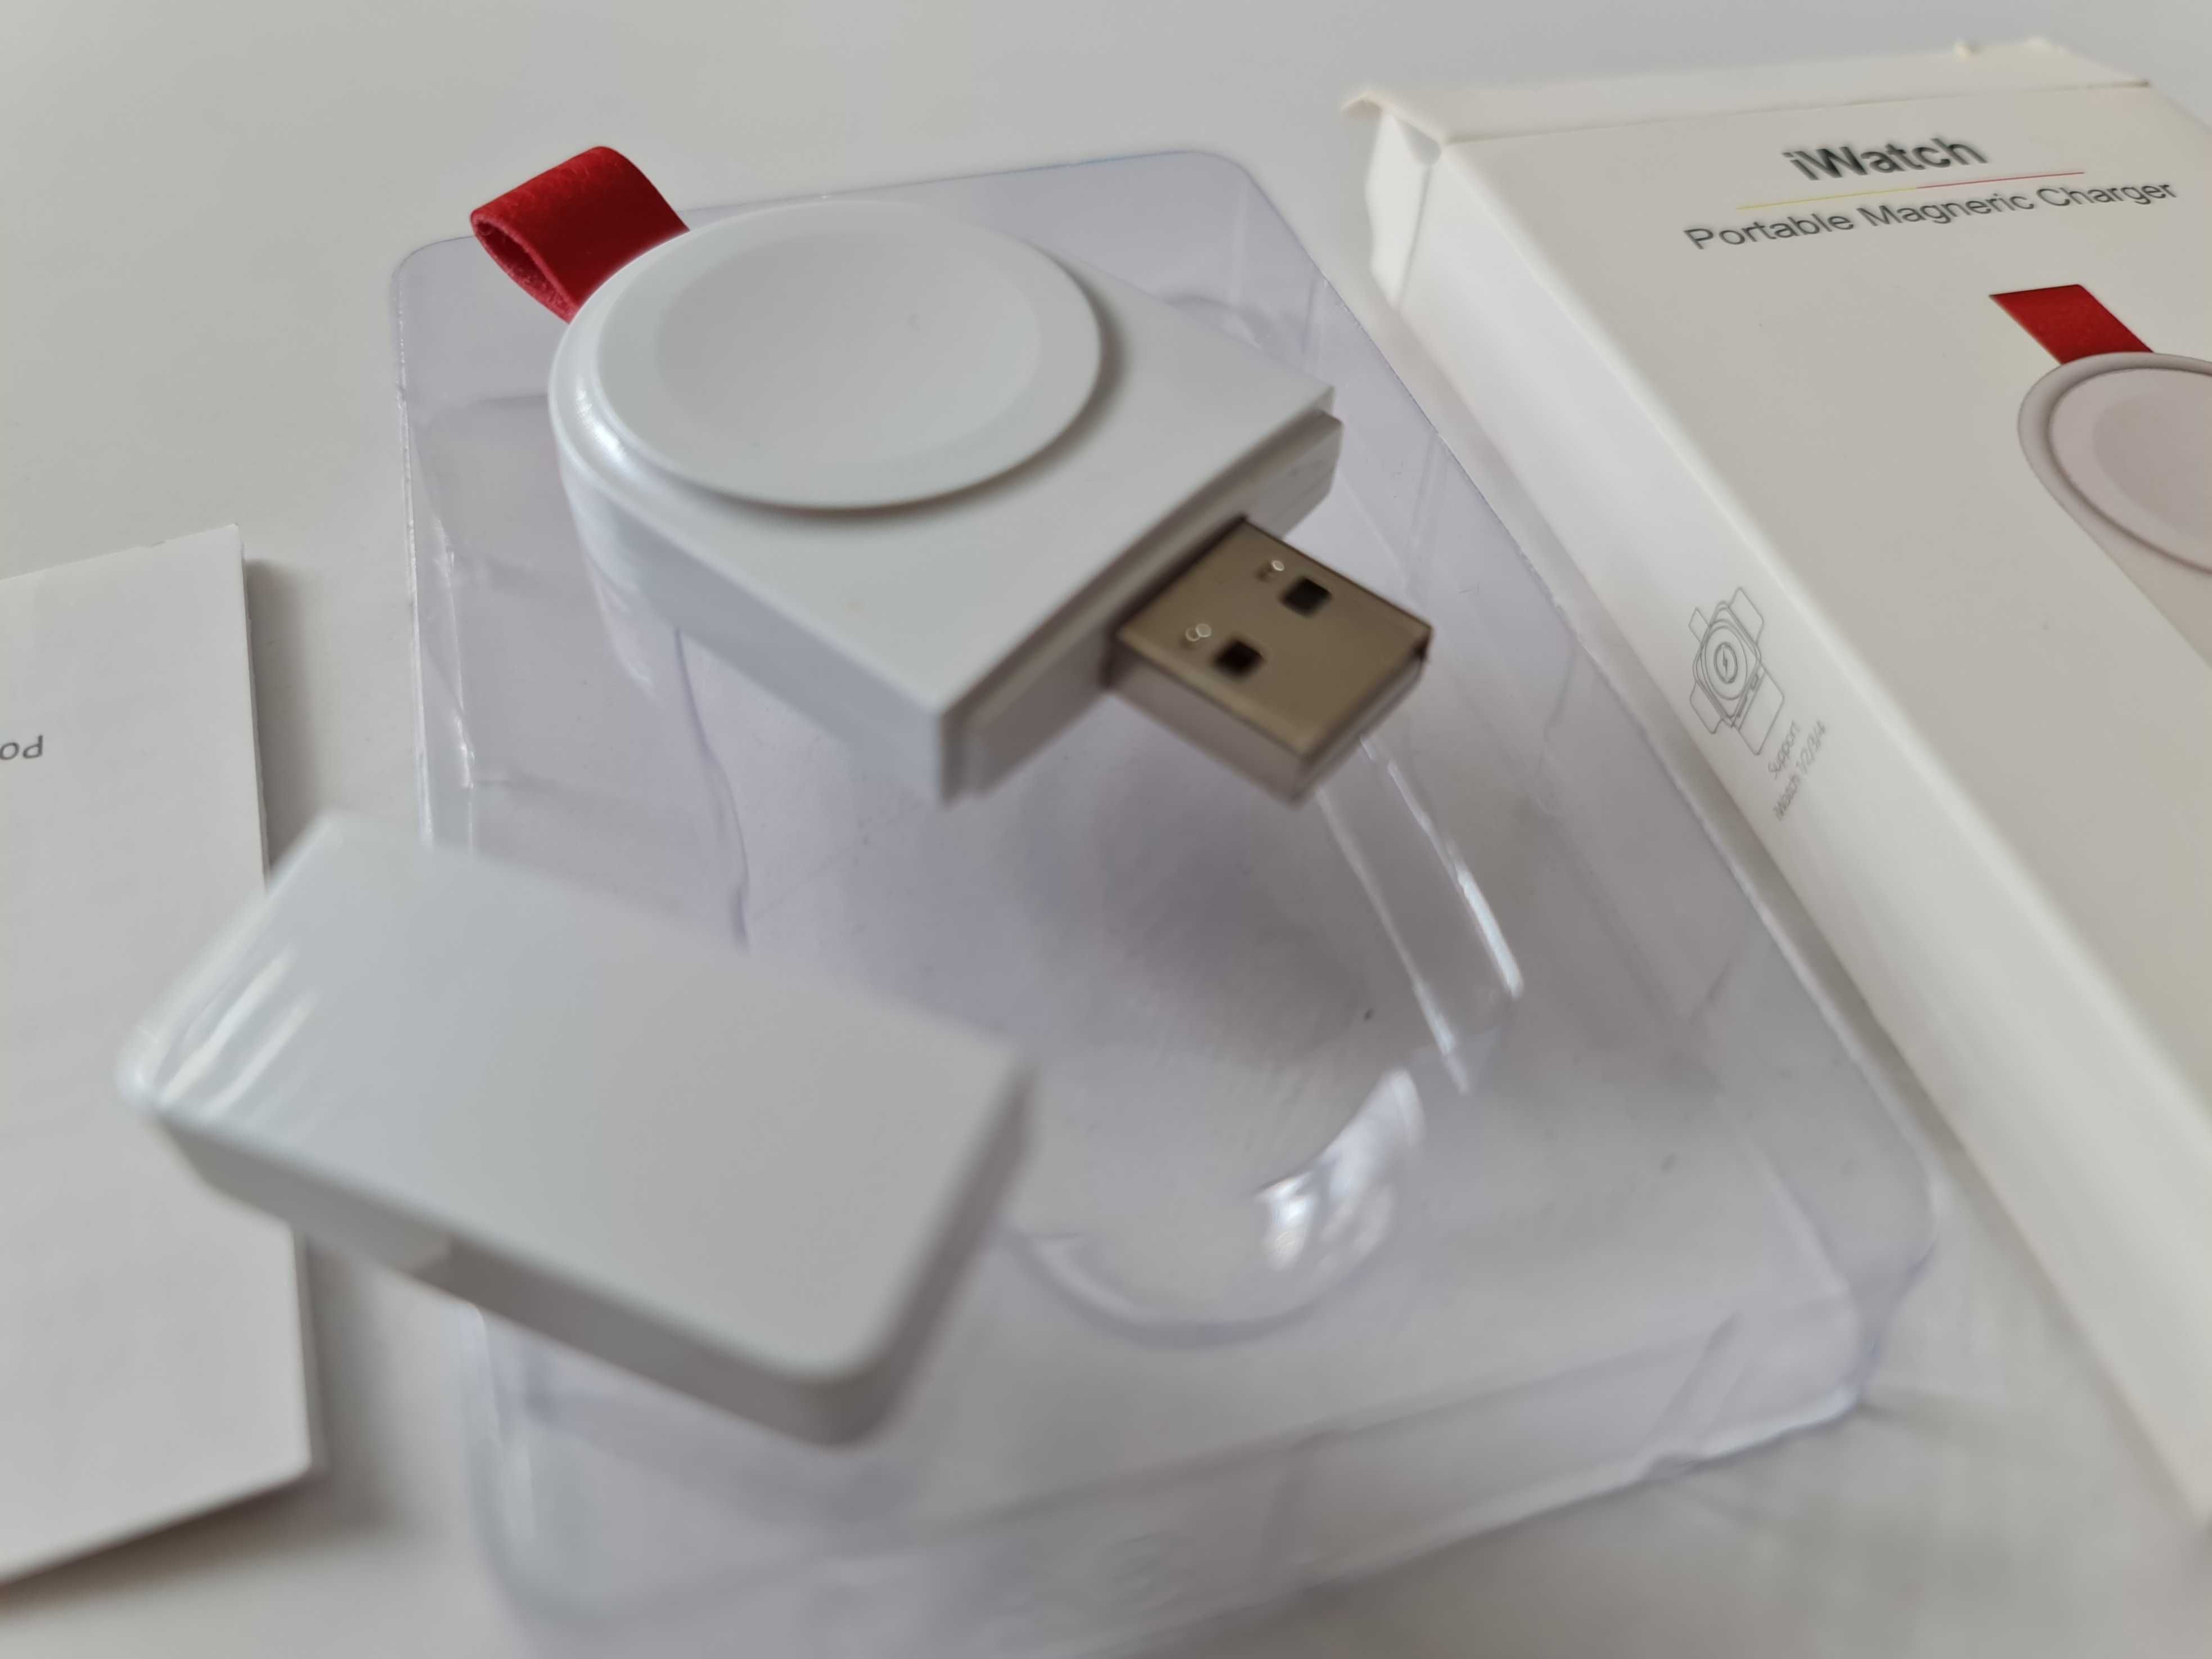 Apple iWatch przenośna ładowarka bezprzewodowa USB